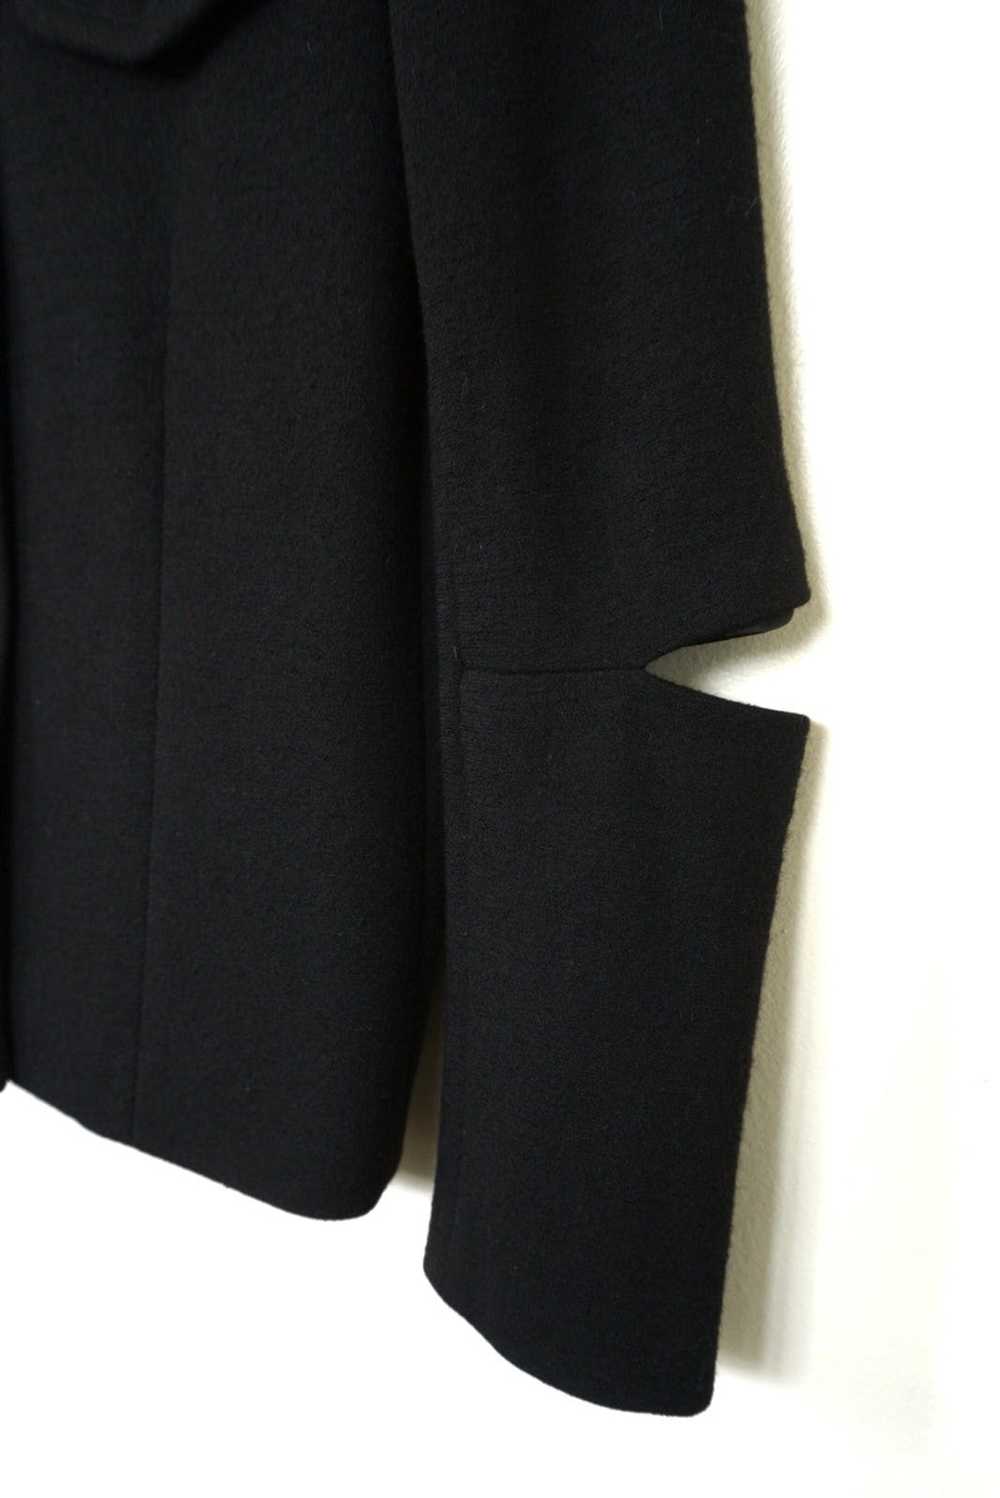 Helmut Lang Slashed Sleeve Jacket - image 4